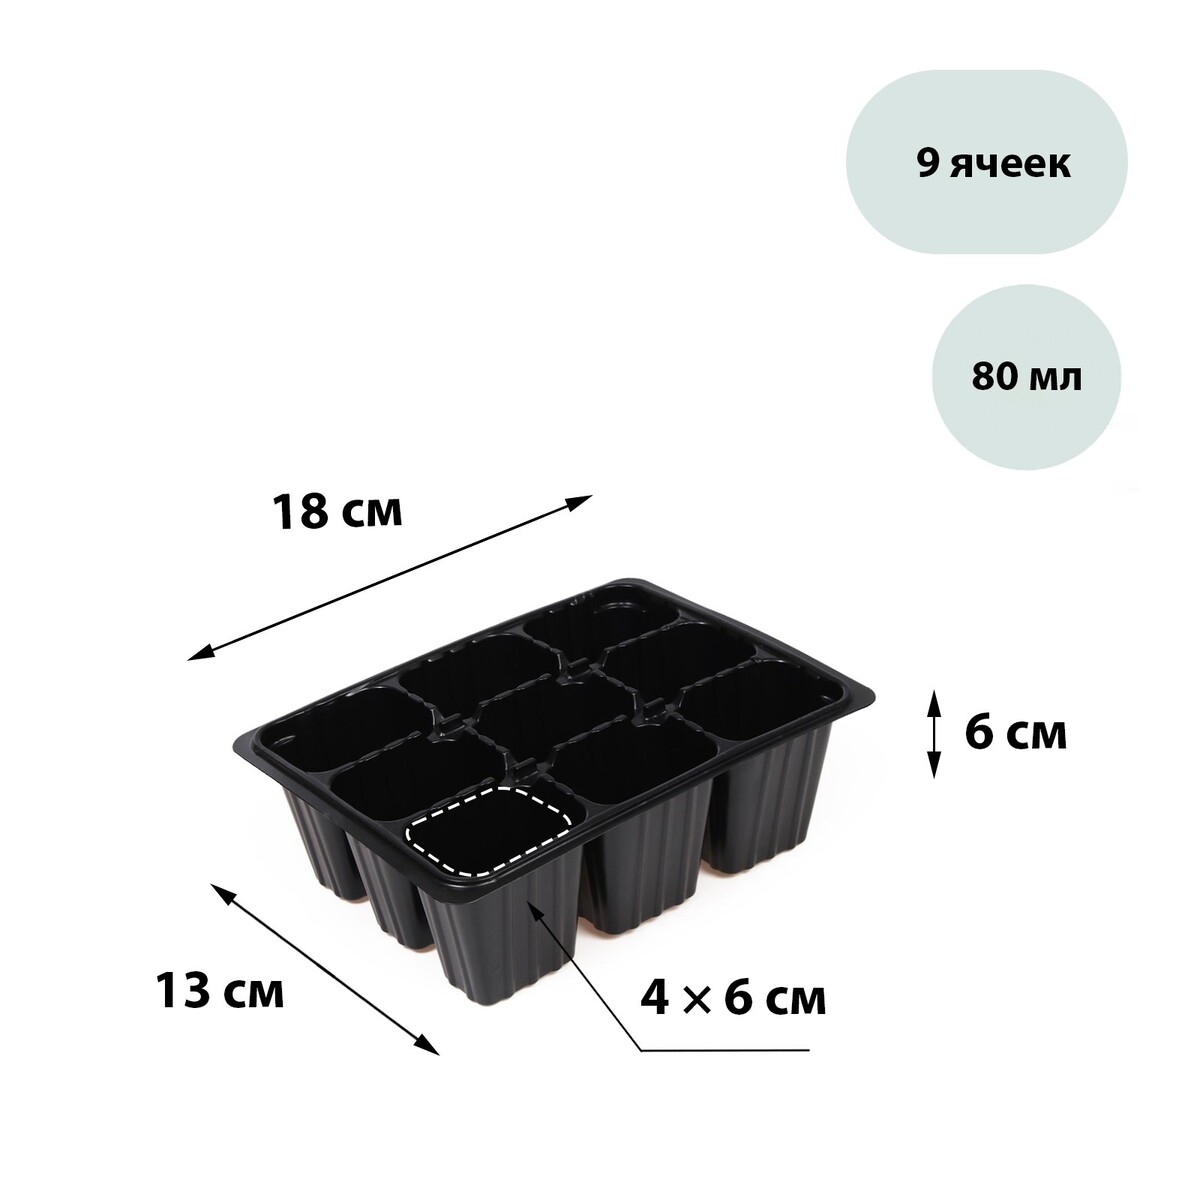 Кассета для рассады, на 9 ячеек, по 80 мл, пластиковая, черная, 18 × 13 × 6 см, greengo кассета для рассады greengo на 4 ячейки по 180 мл пластиковая черная 18 × 13 × 6 см